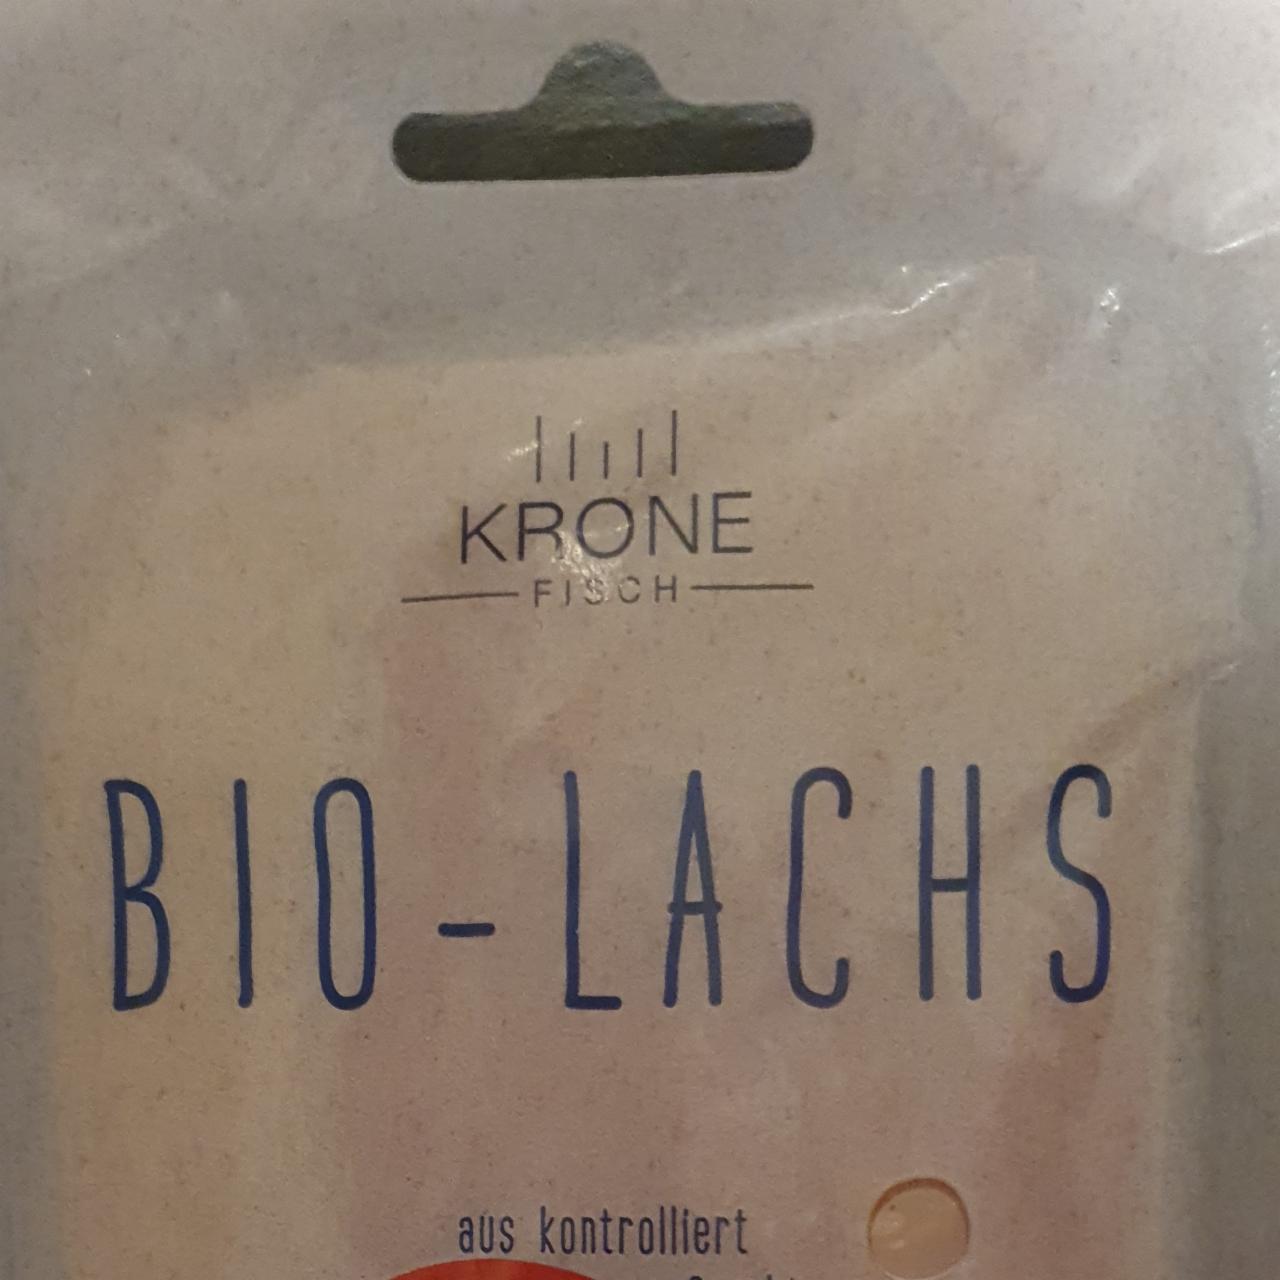 Fotografie - Bio - Lachs Krone Fisch